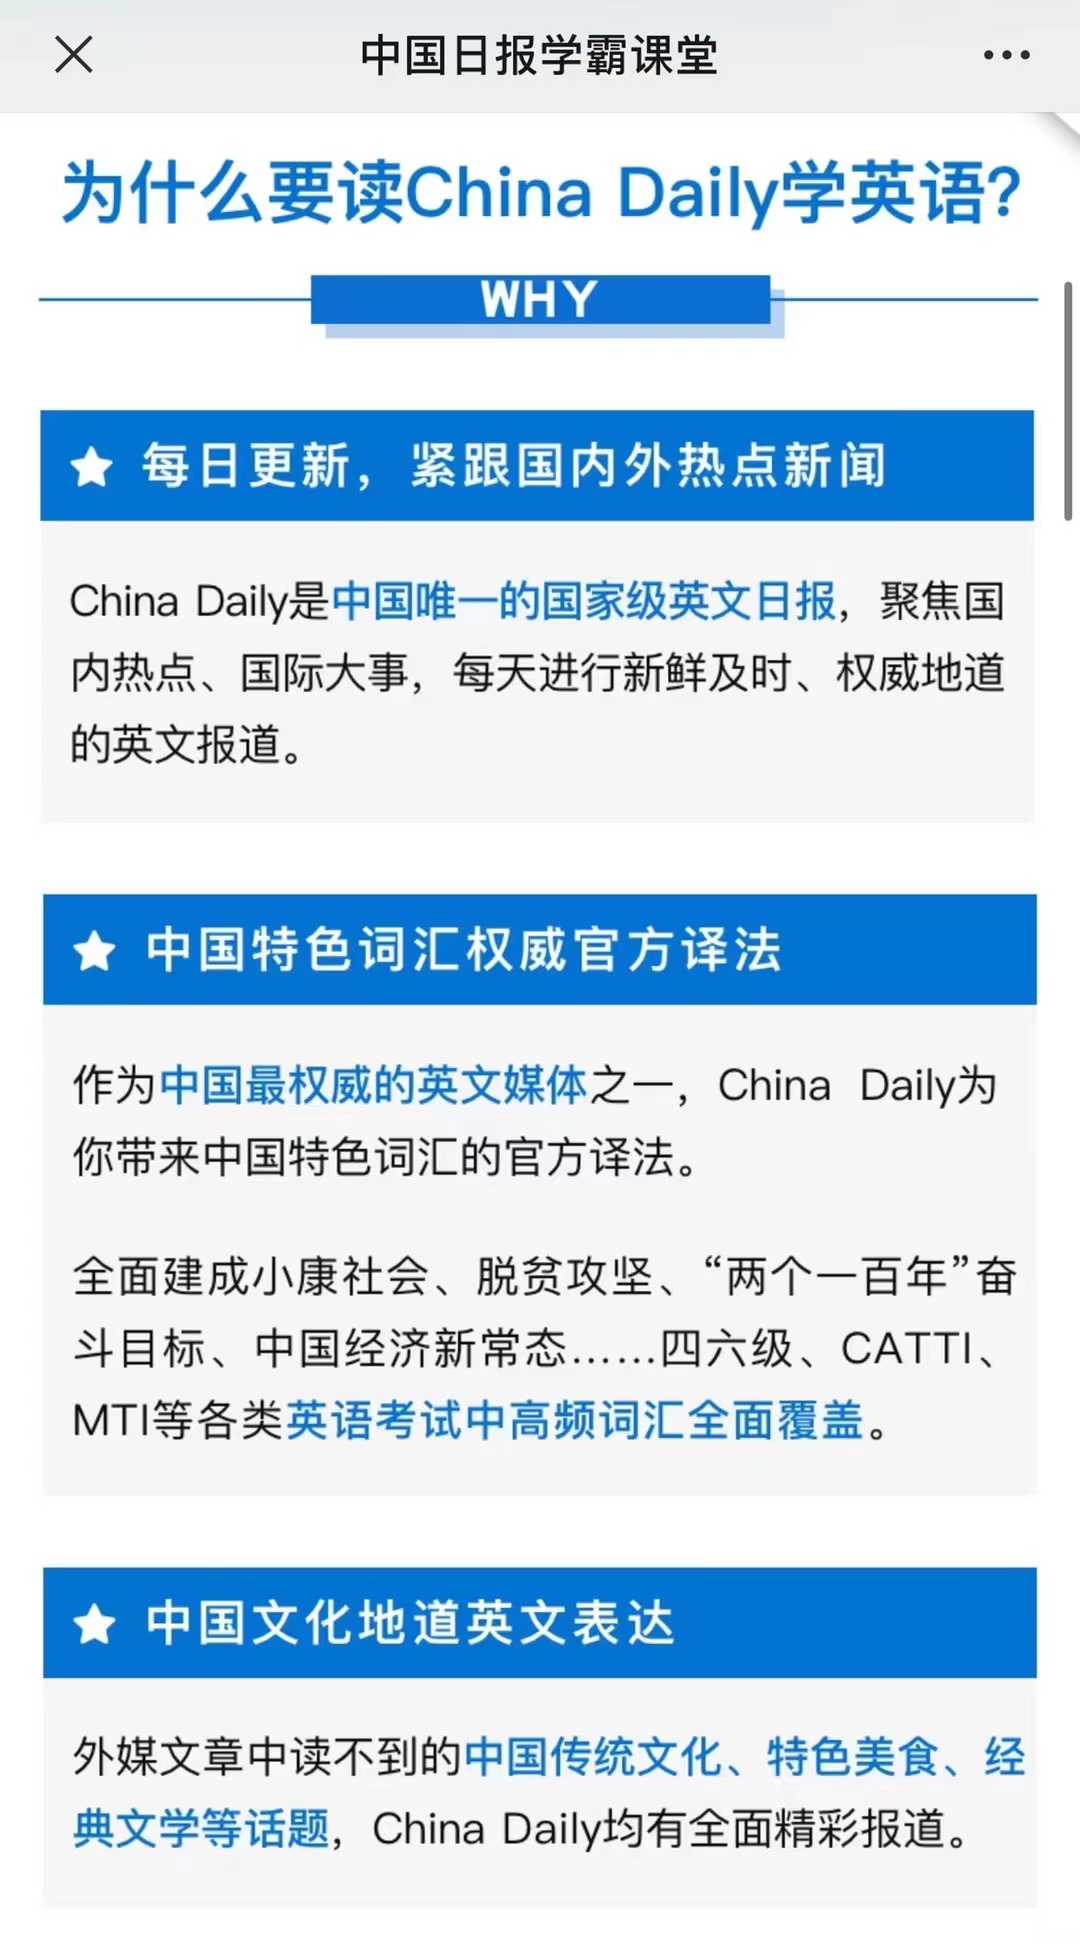 【英语更新】《China Daily 精读计划》 ●更新到0704